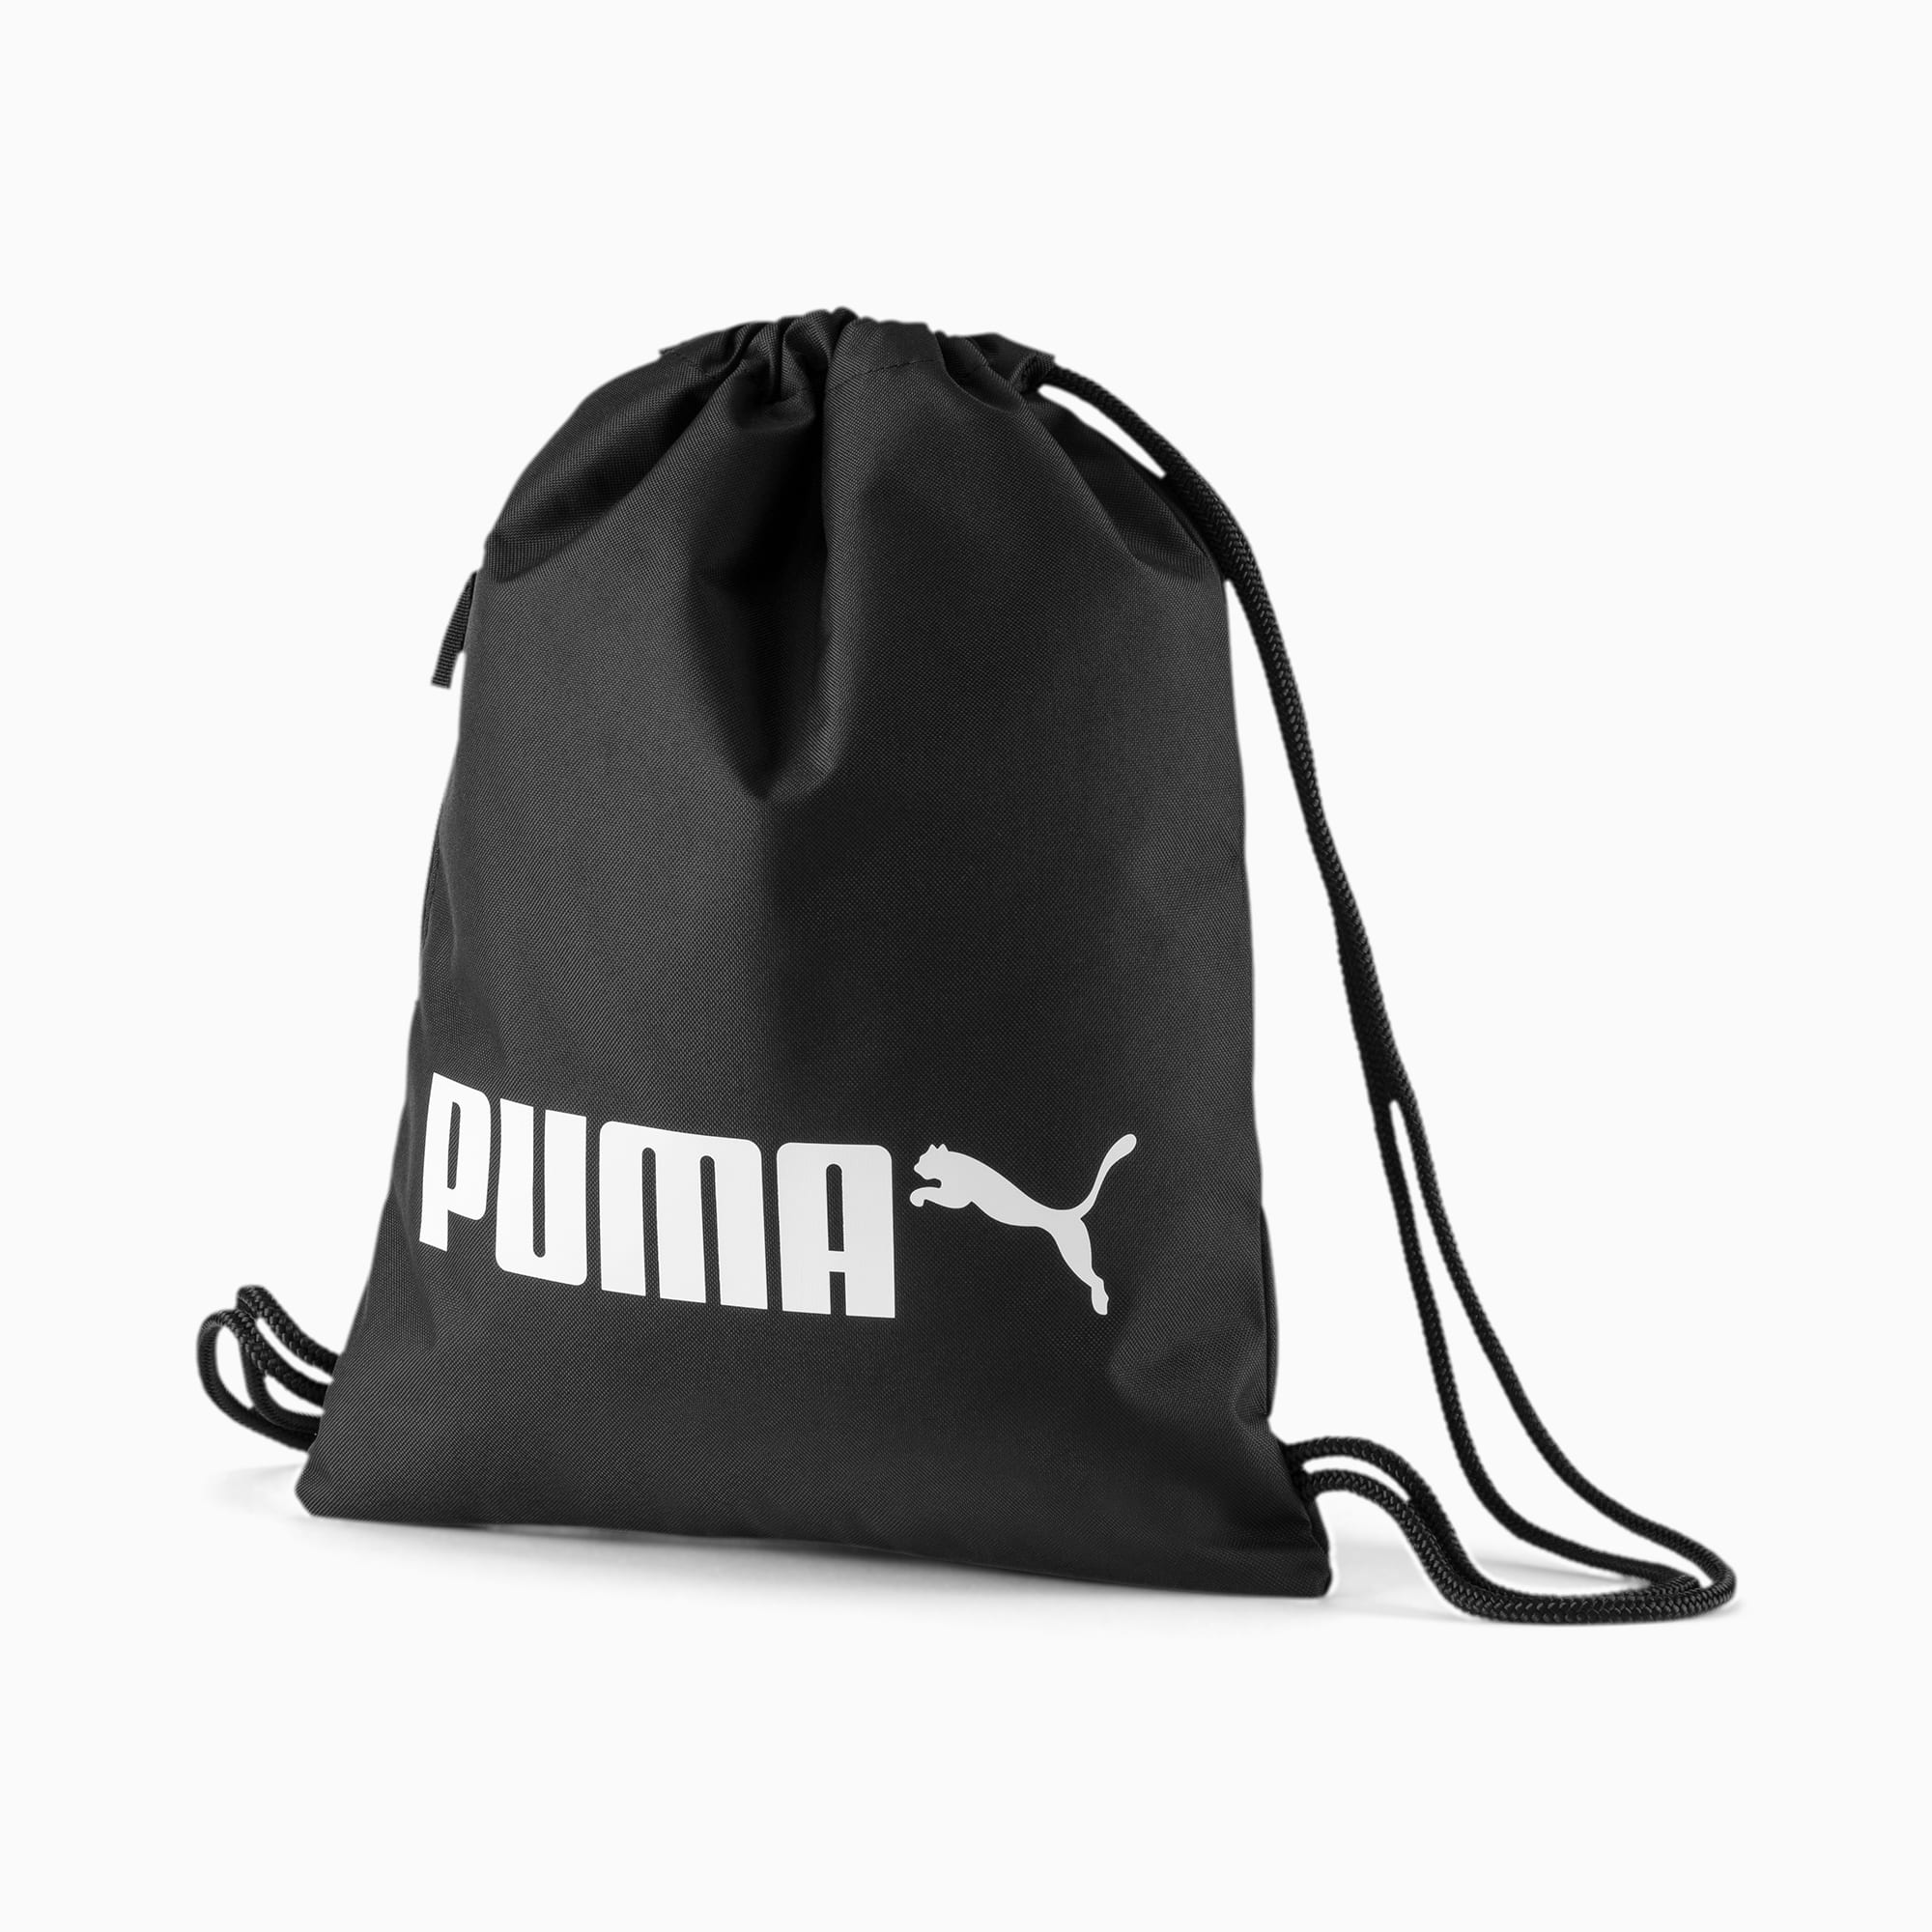 puma bag and shoes